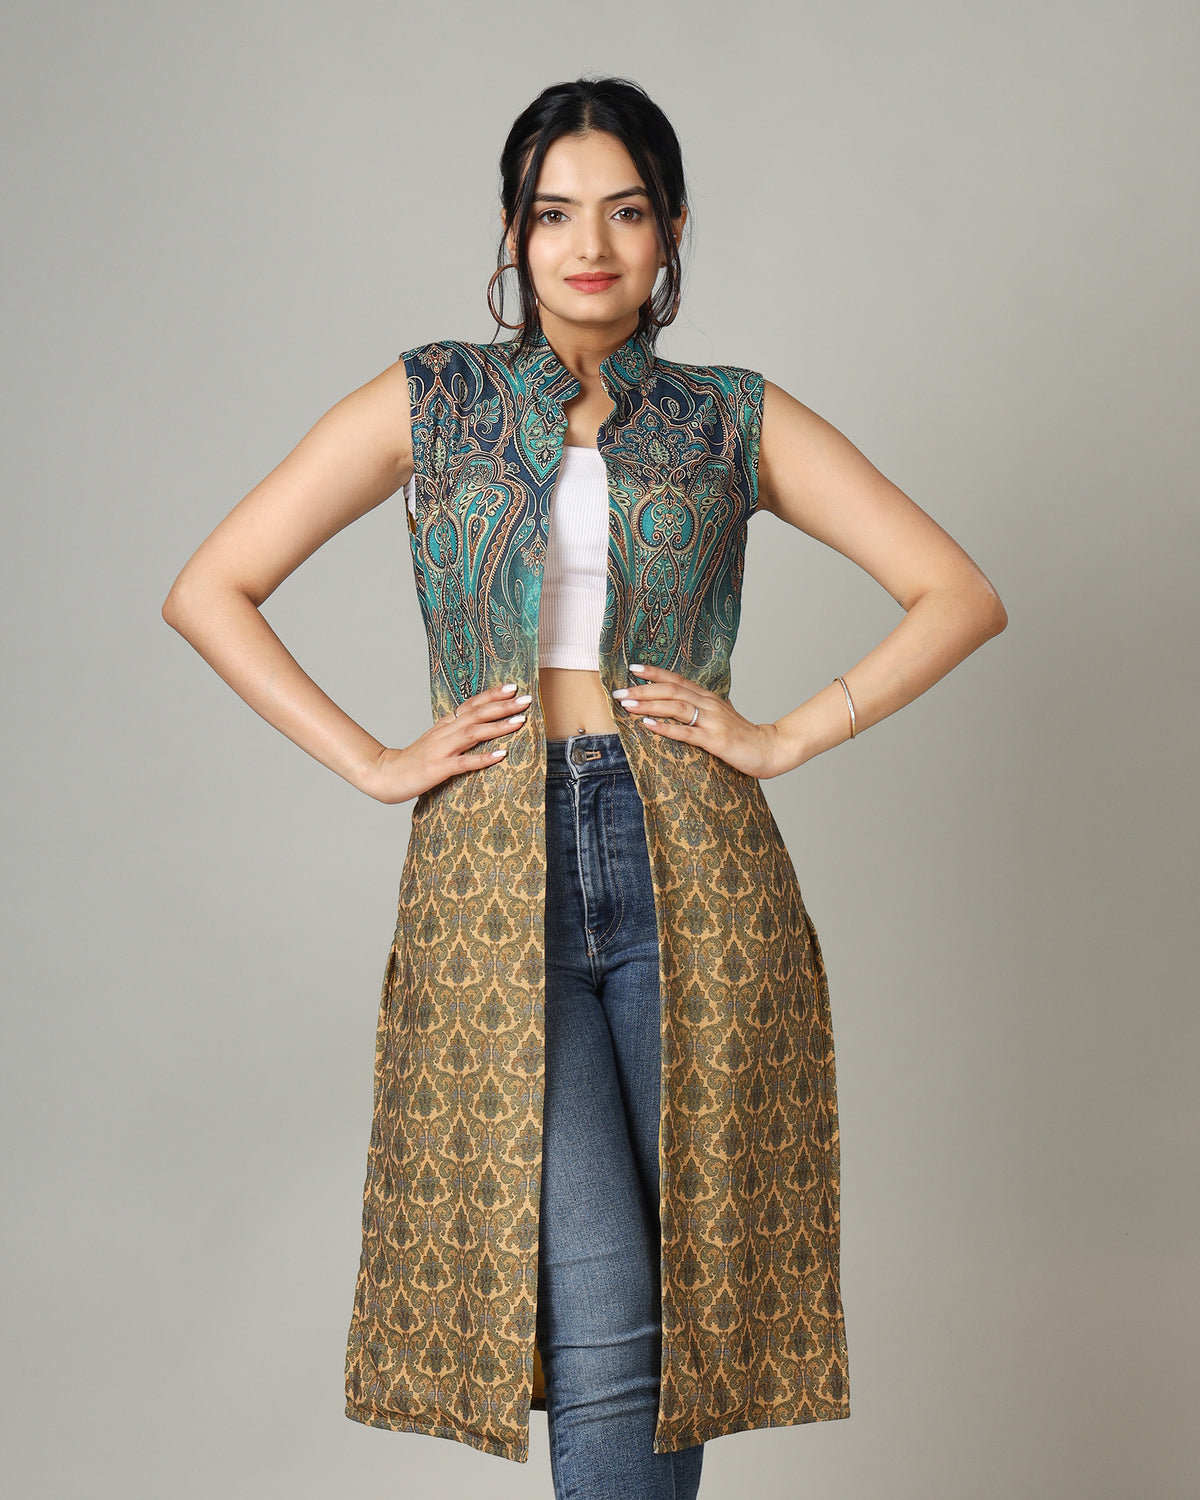 One Jacket, Endless Looks-Women's Pashmina Long Jacket